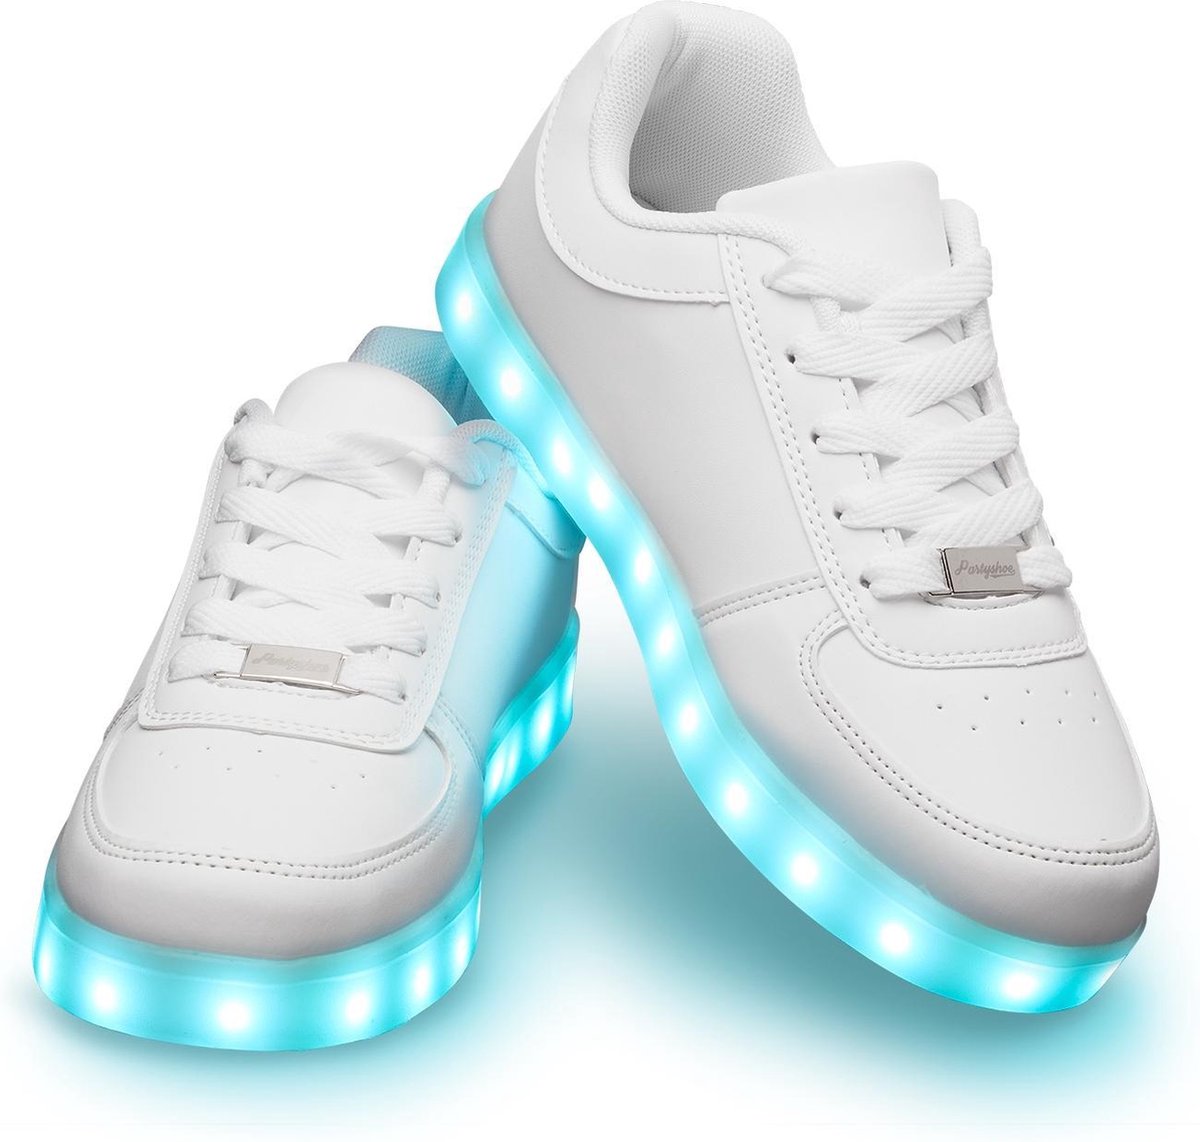 Schoenen met lichtjes - Lichtgevende led schoenen - Wit - Maat 45